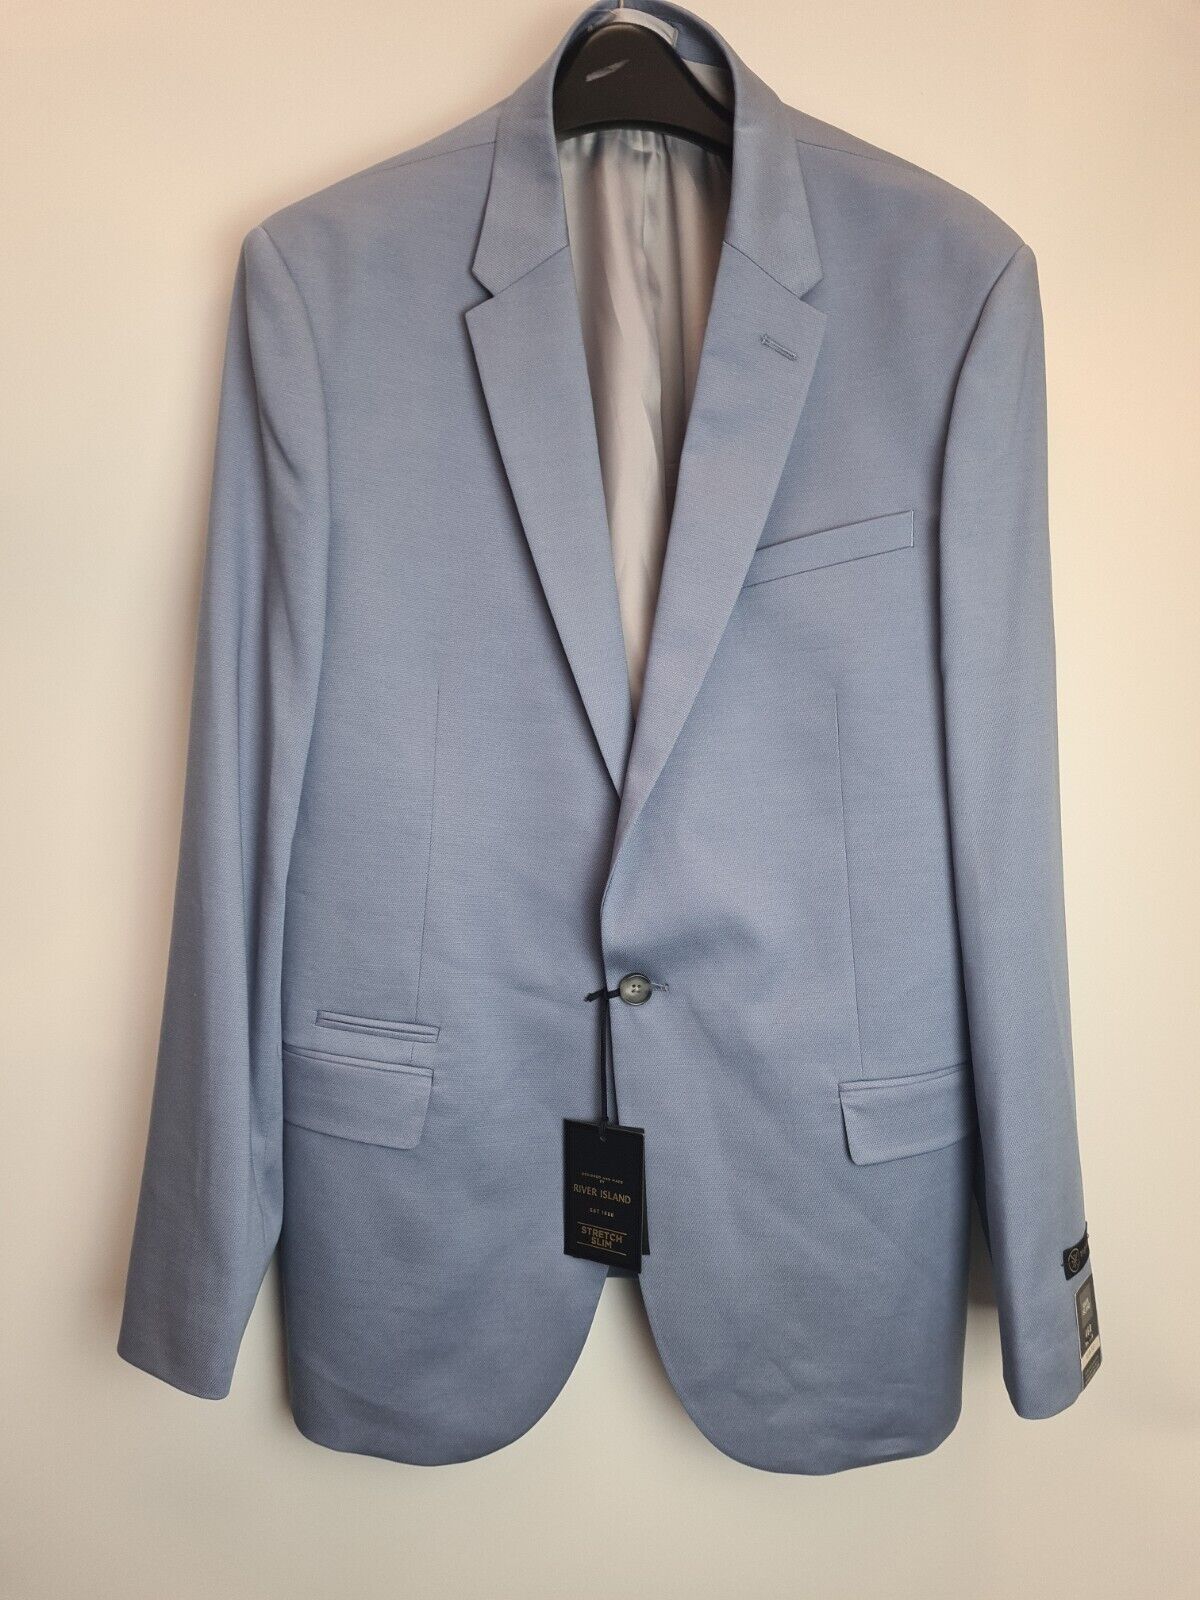 River Island Mens Slim Fit Blue Suit Jacket Blazer Size 40L **** VH5